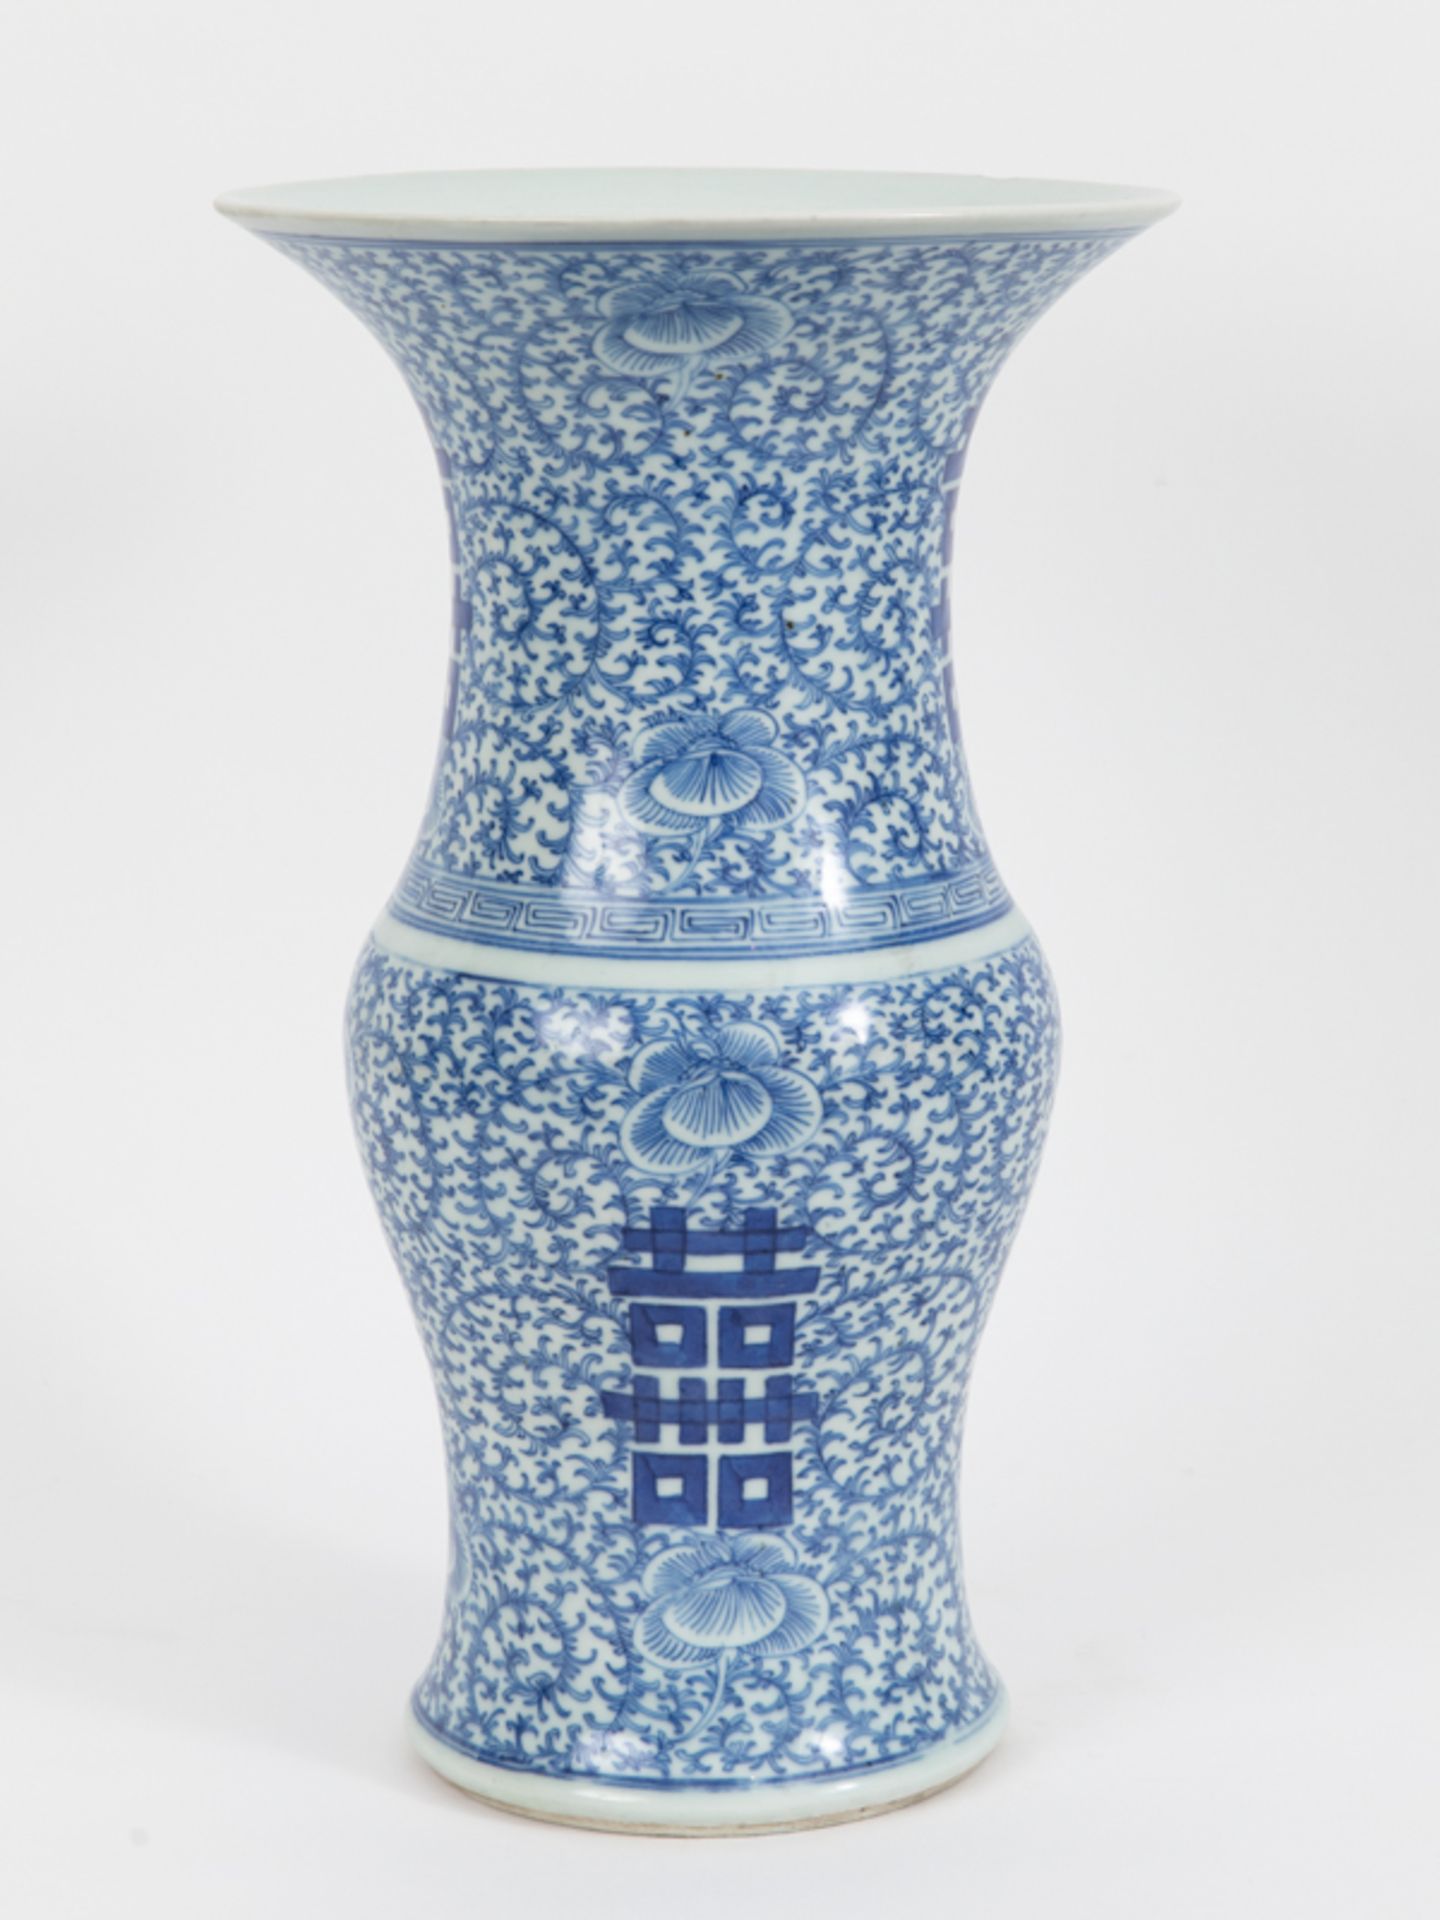 Balustervase mit GlÃ¼ckssymbolik, China, Qing-Dynastie, 18./19. Jh. brPorzellan mit unter Glasur